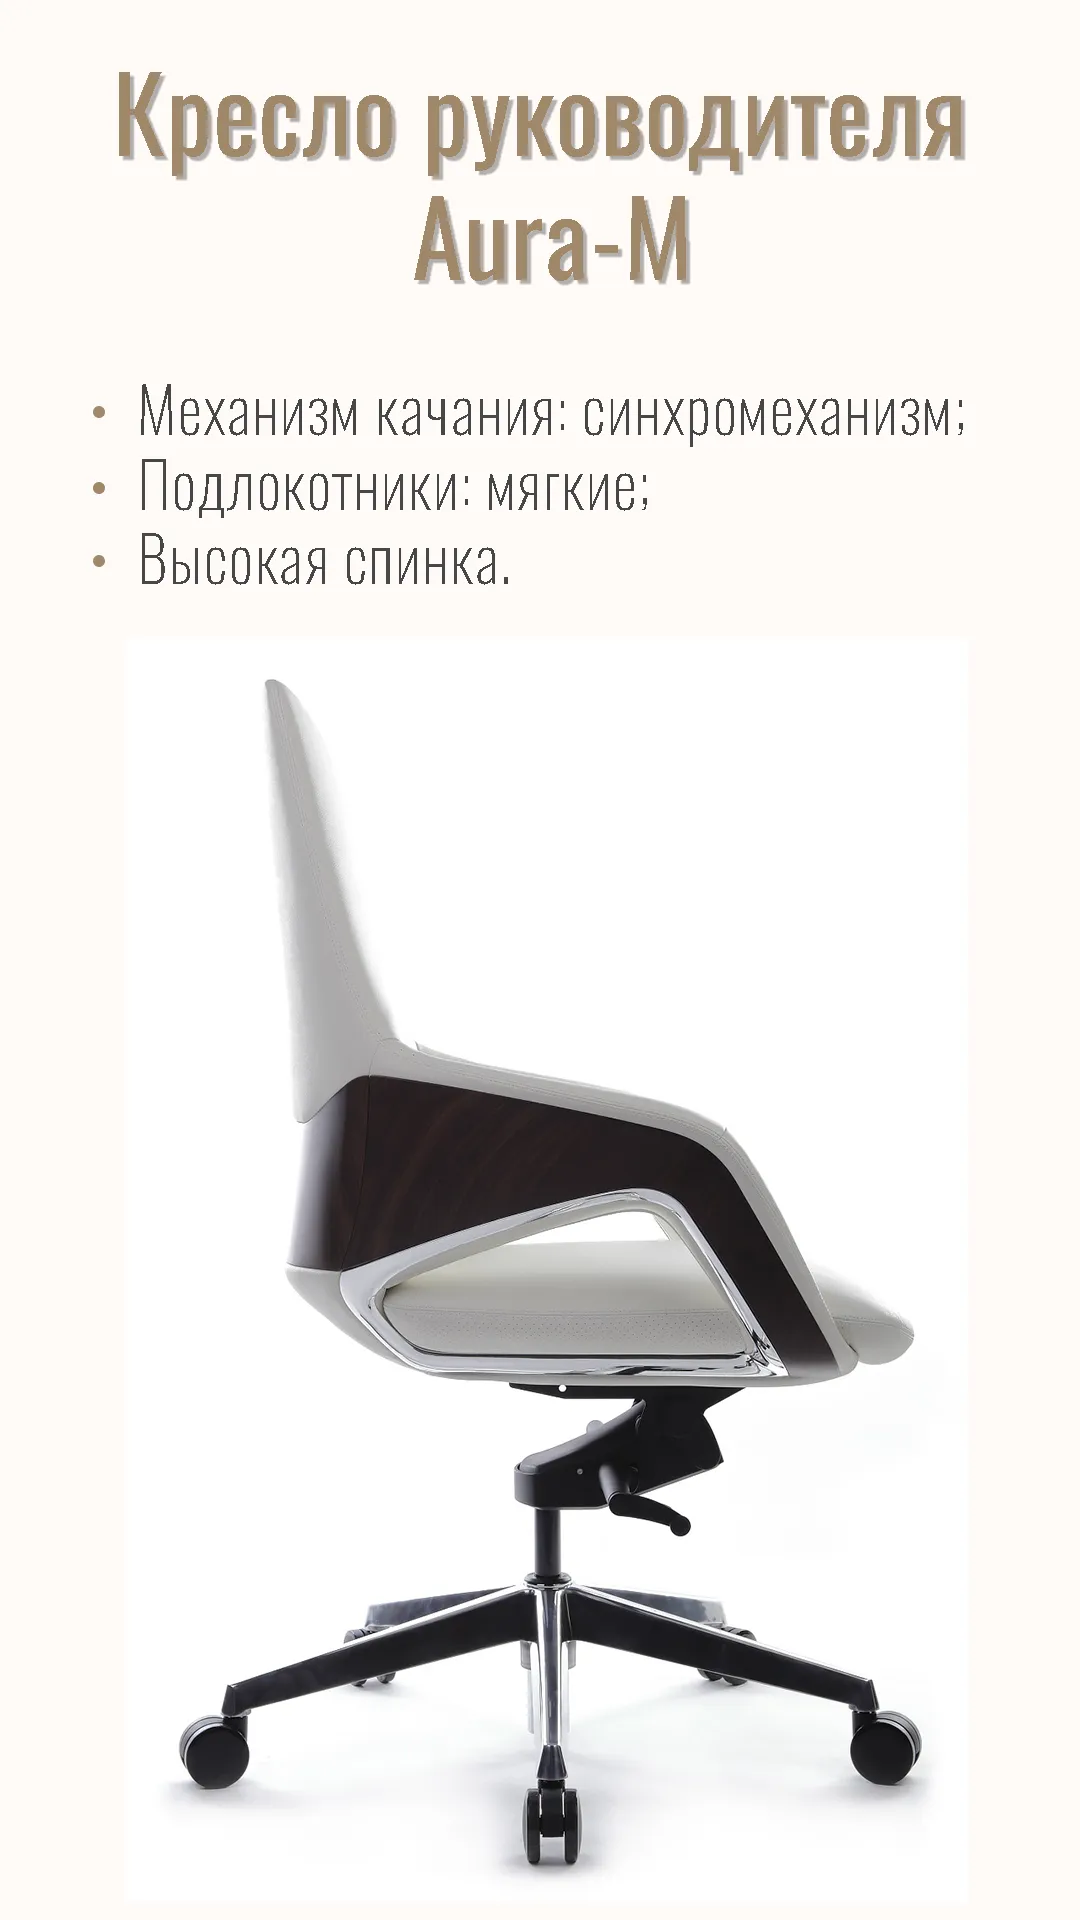 Кресло руководителя RIVA DESIGN Aura-M (FK005-В) белый